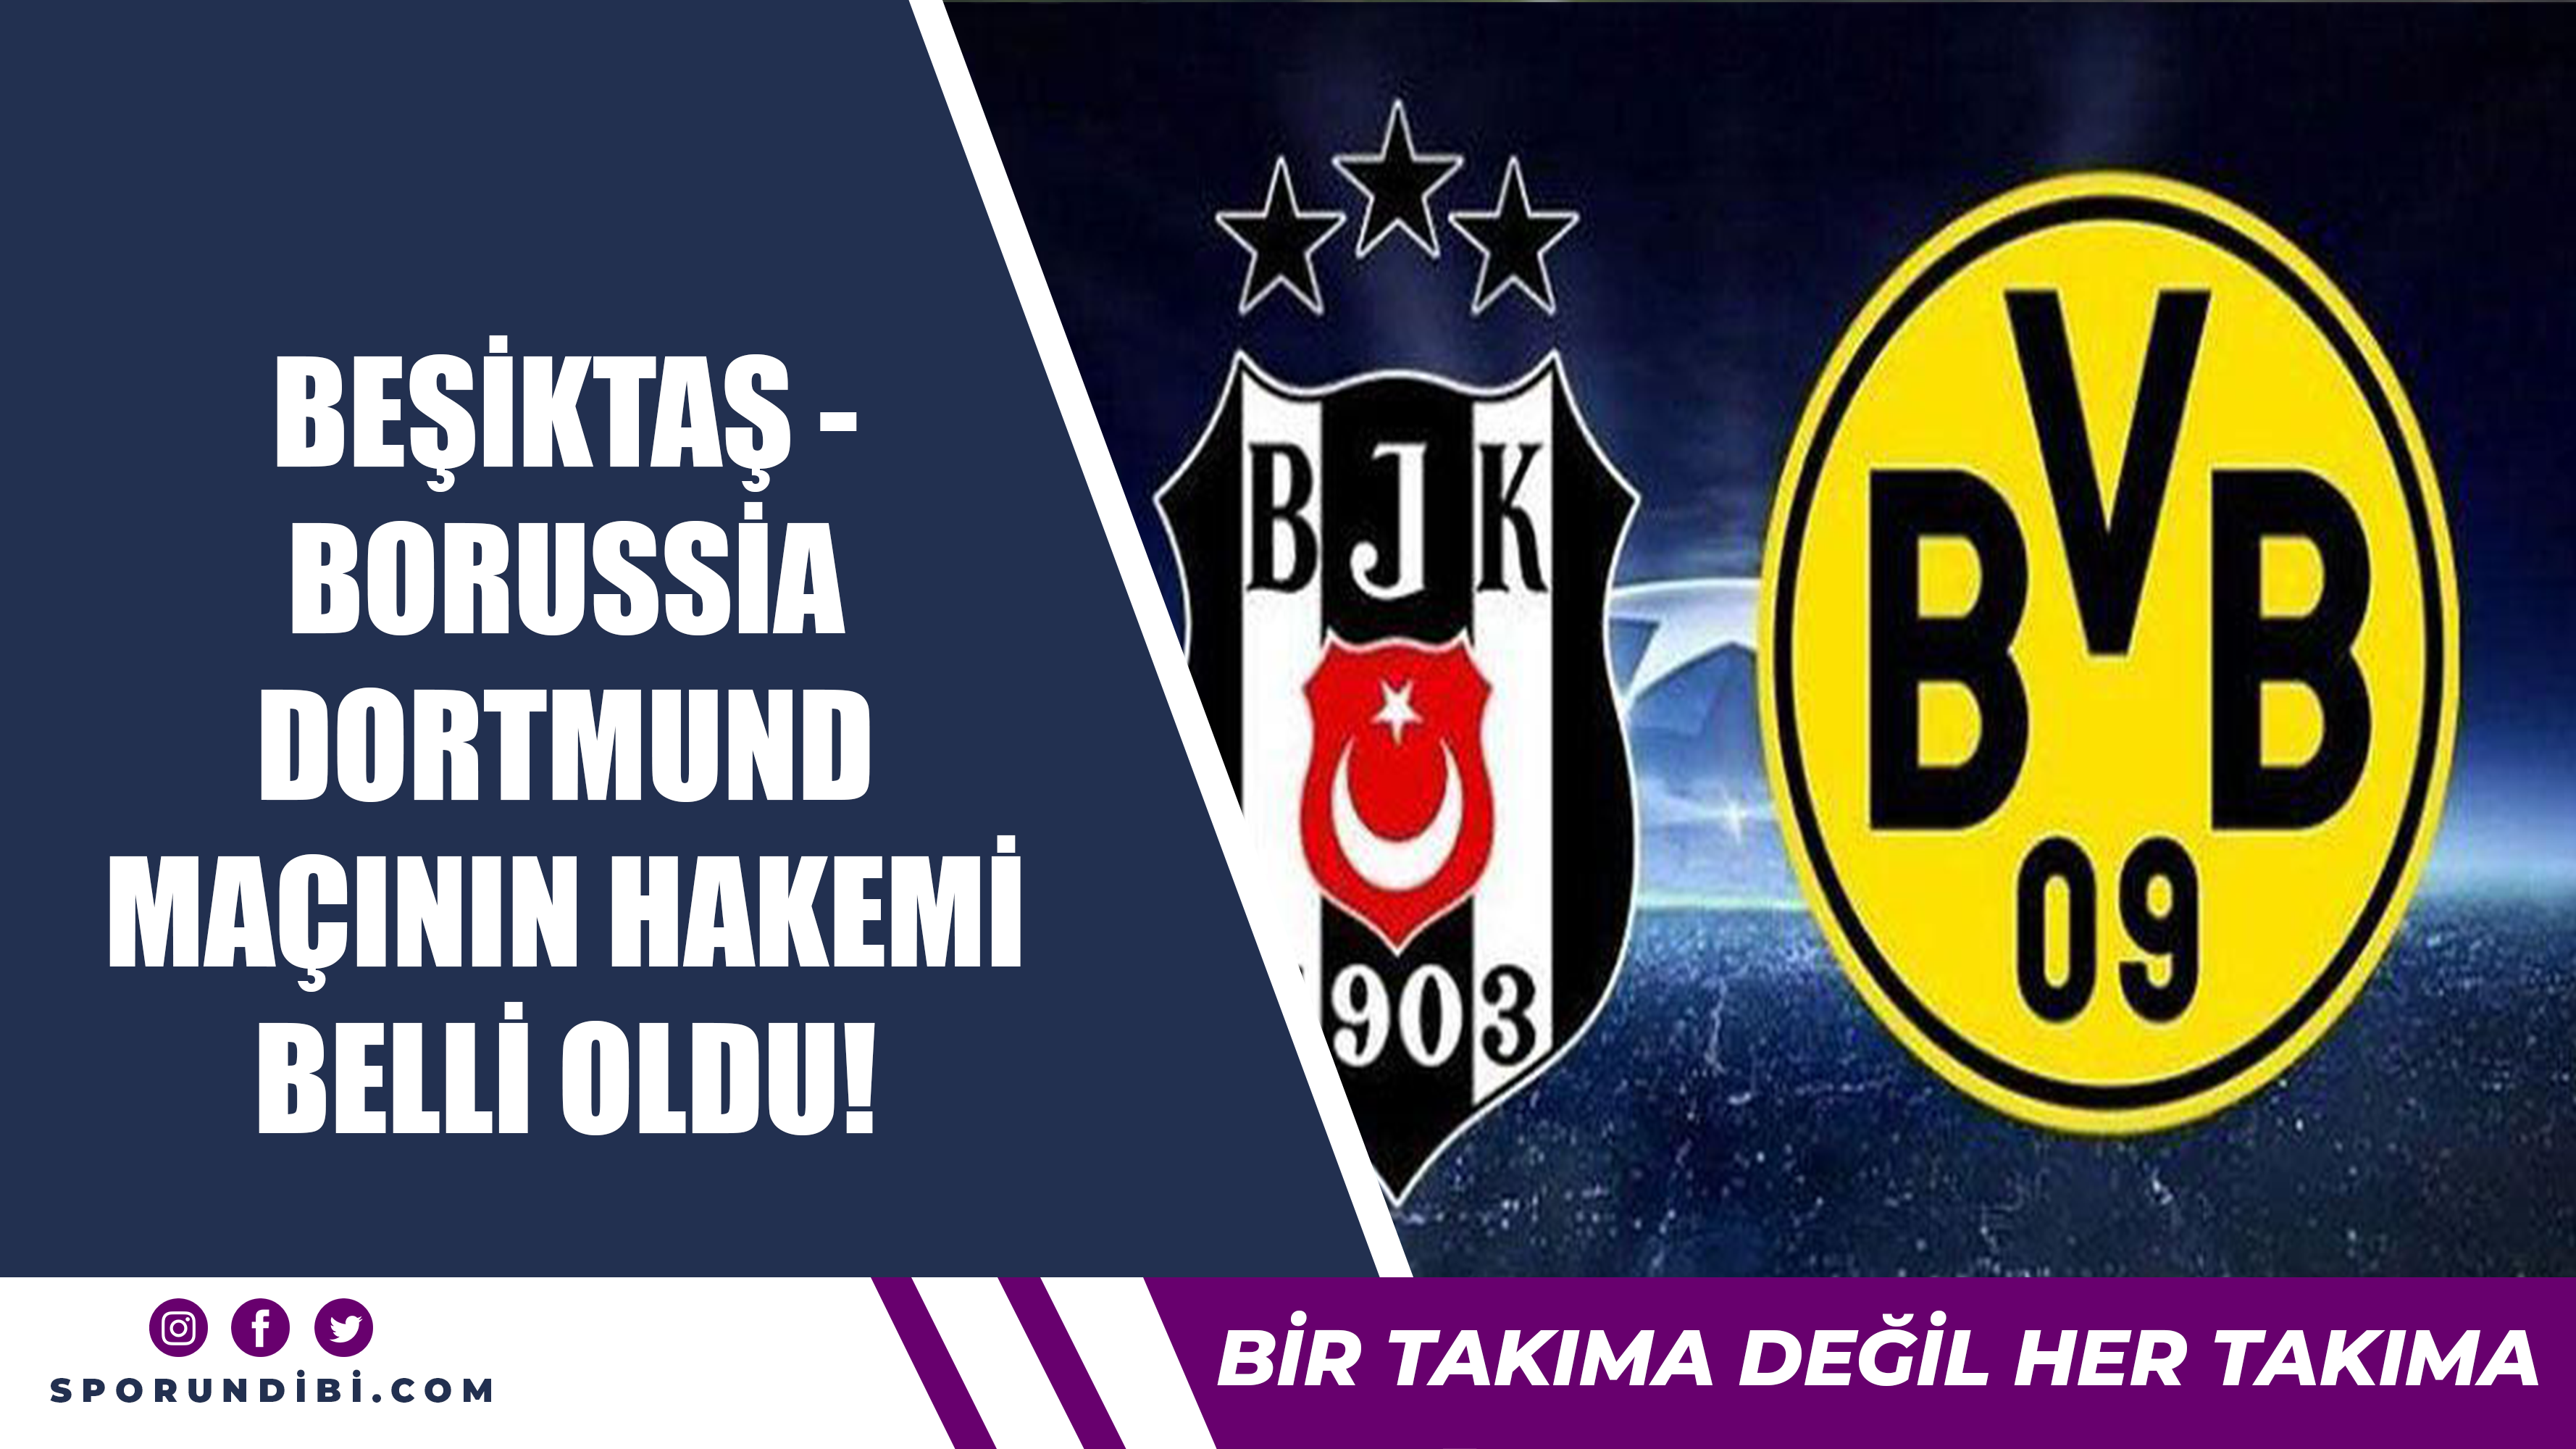 Beşiktaş - Borussia Dortmund maçının hakemi belli oldu!